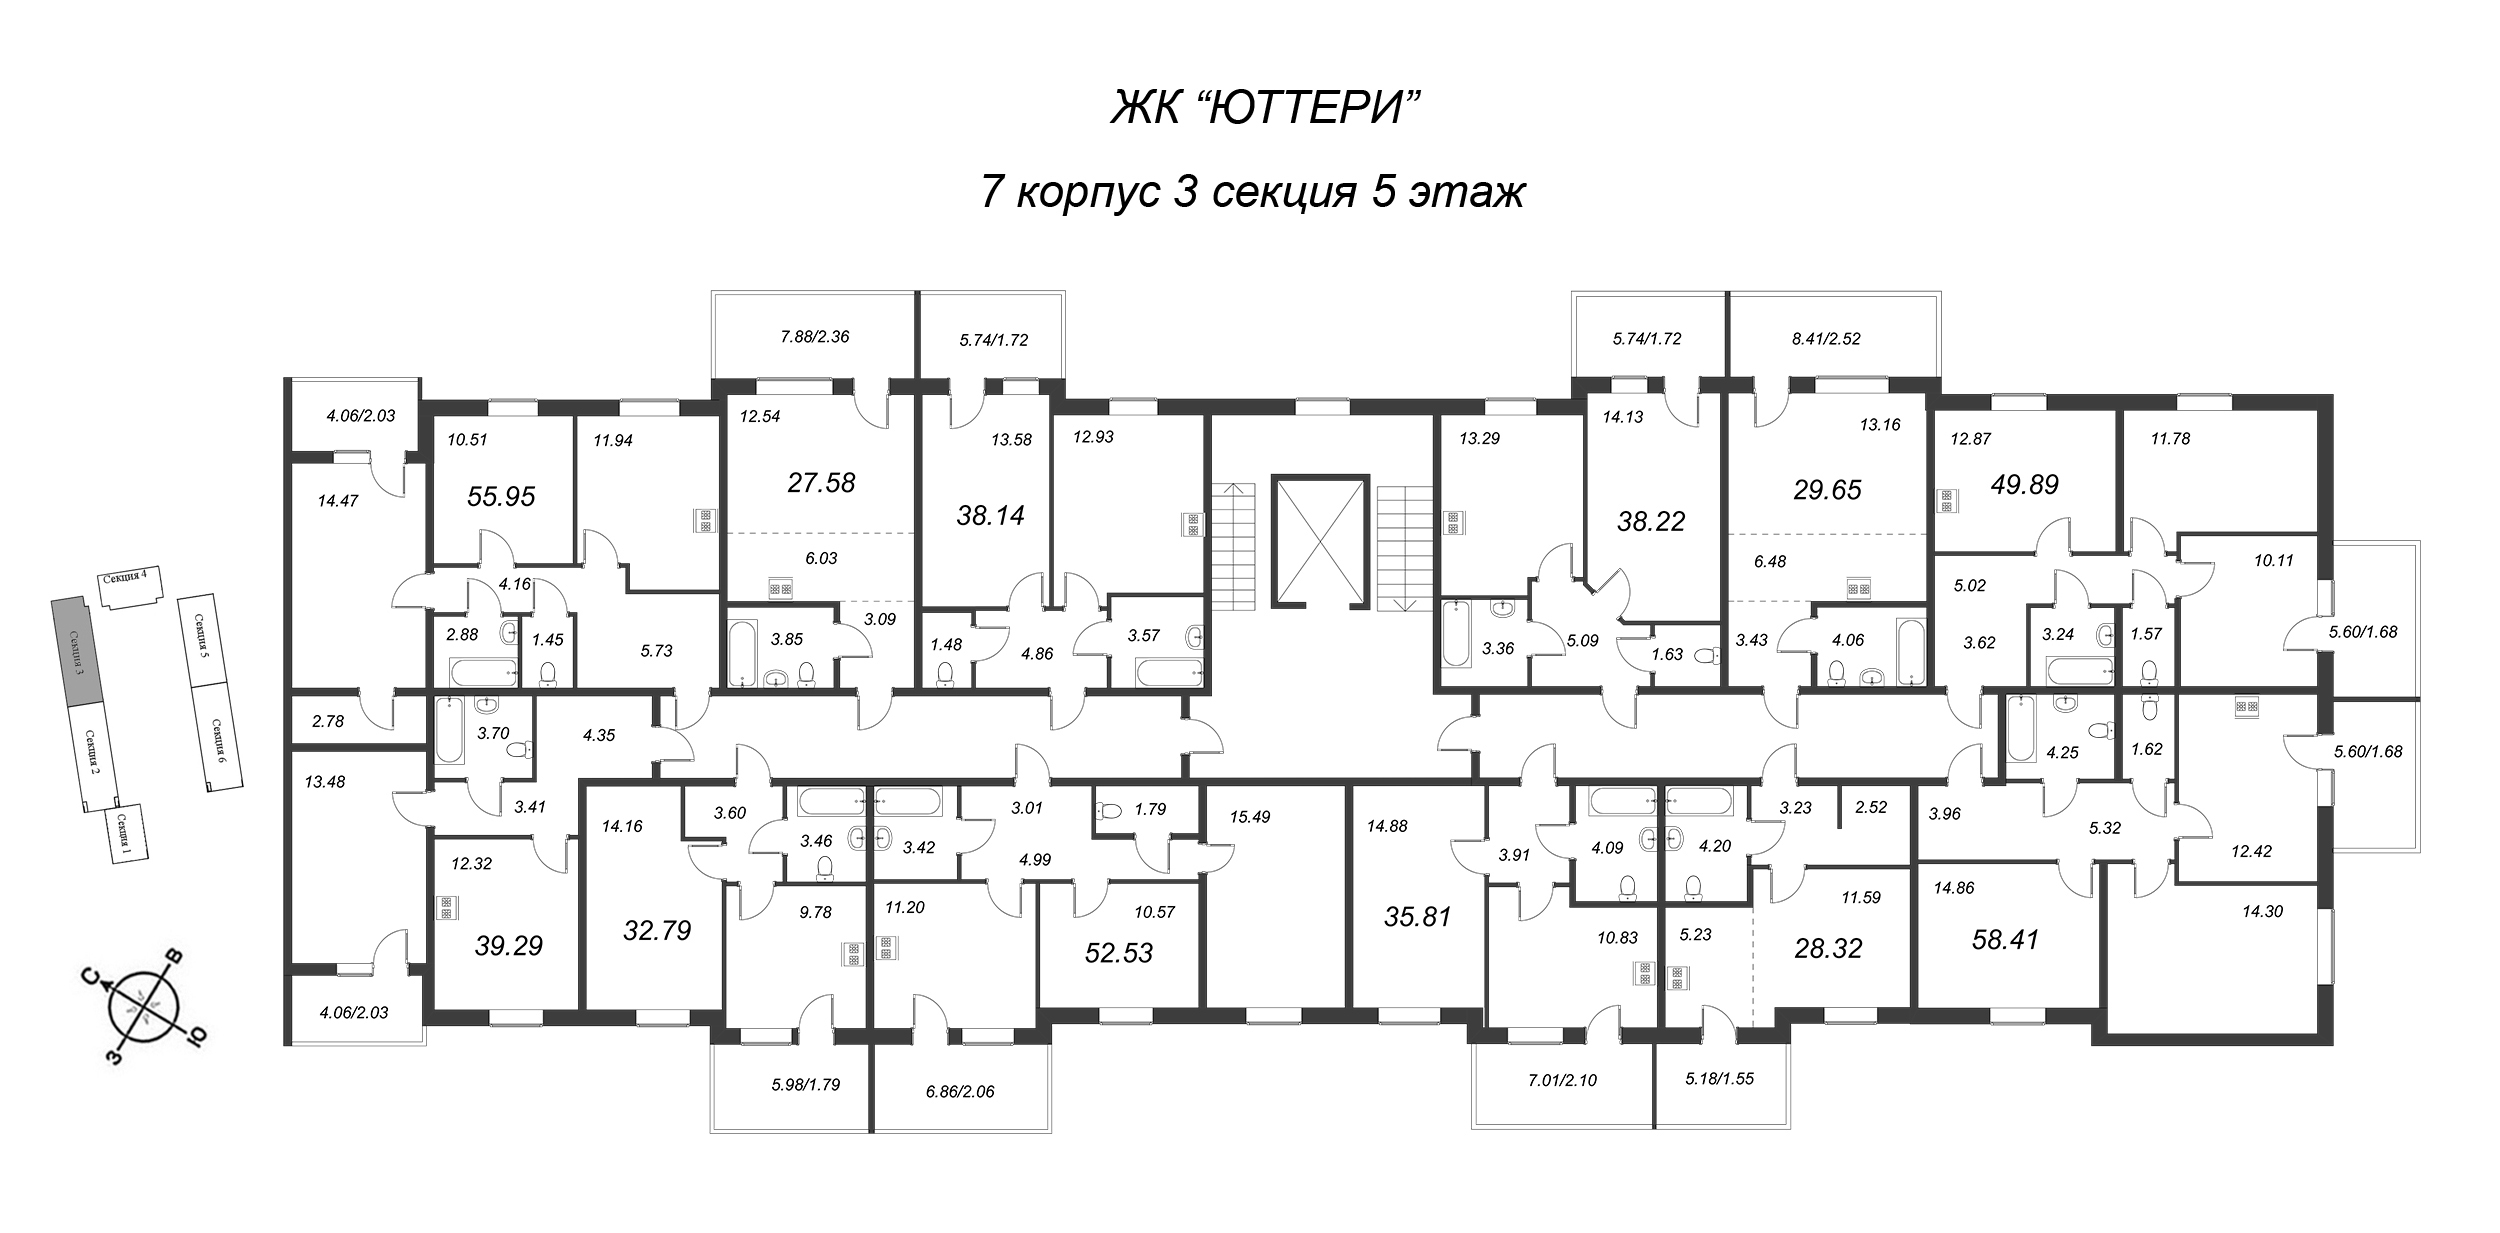 2-комнатная квартира, 53.92 м² в ЖК "Юттери" - планировка этажа